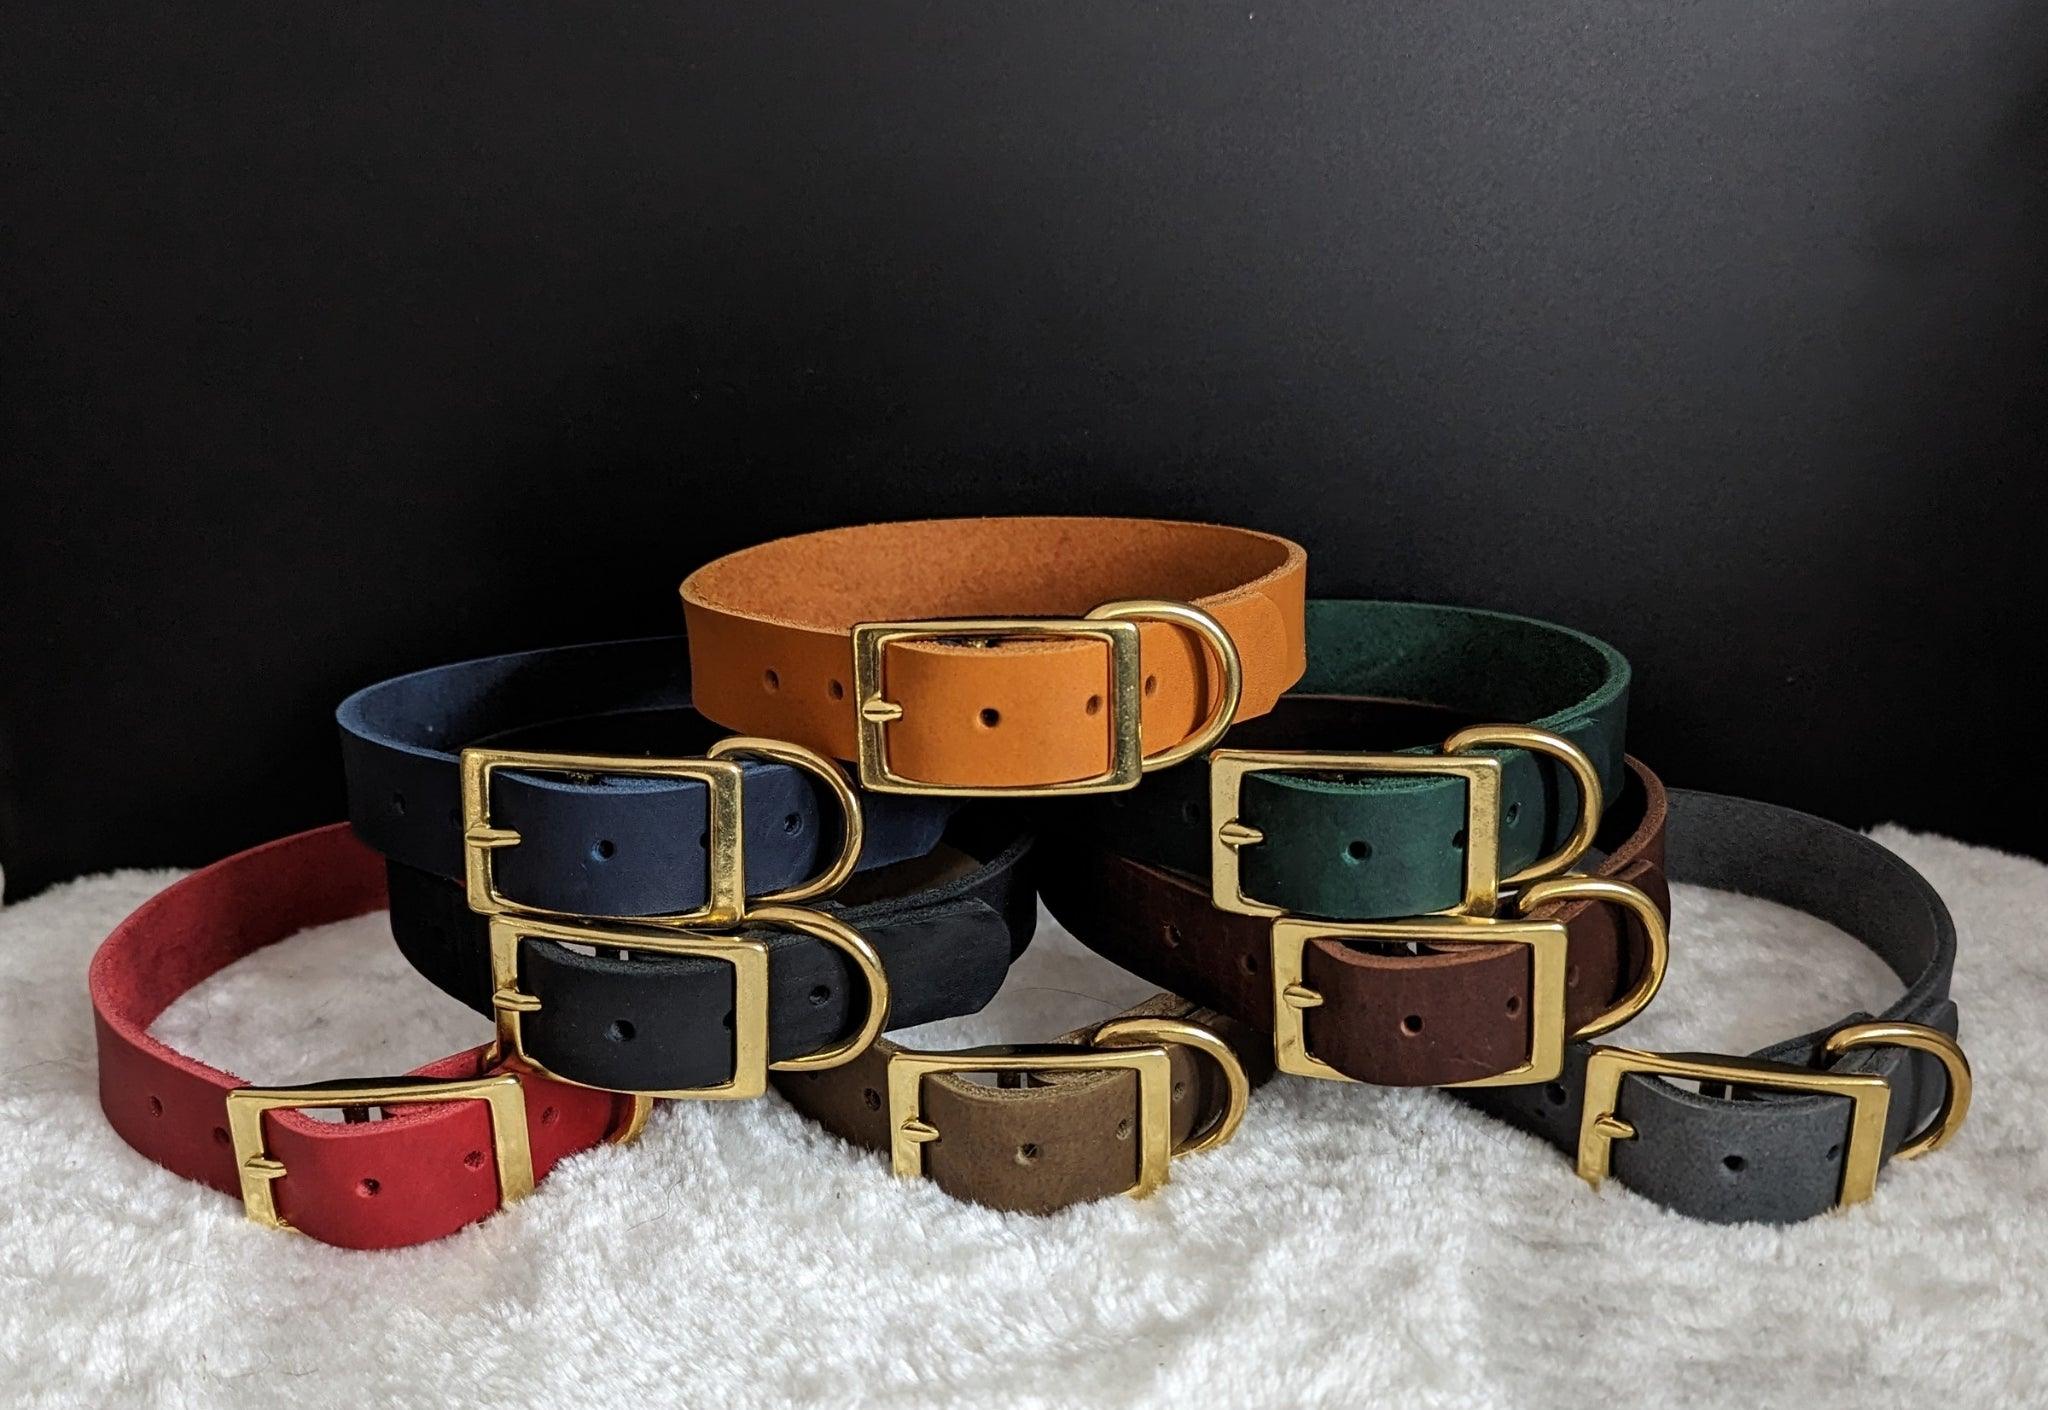 Fettleder Halsbänder in tollen Farben, tolles butterweiches Material für Hunde 